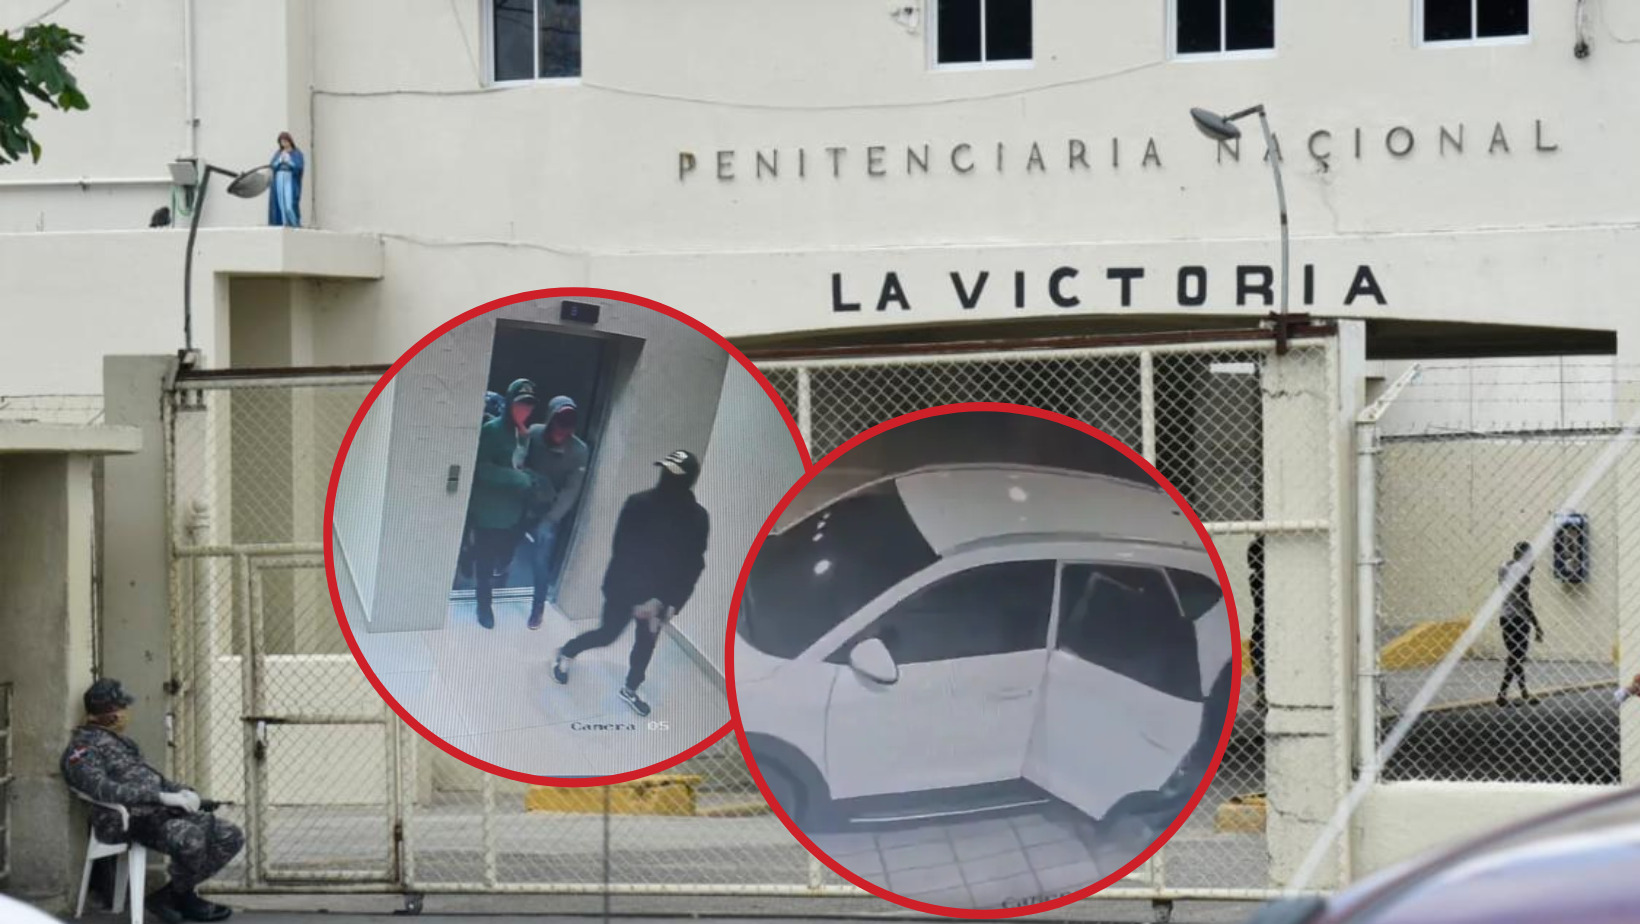 Preso de La Victoria lidera banda dedicada a robos en torres y residenciales, según la PN